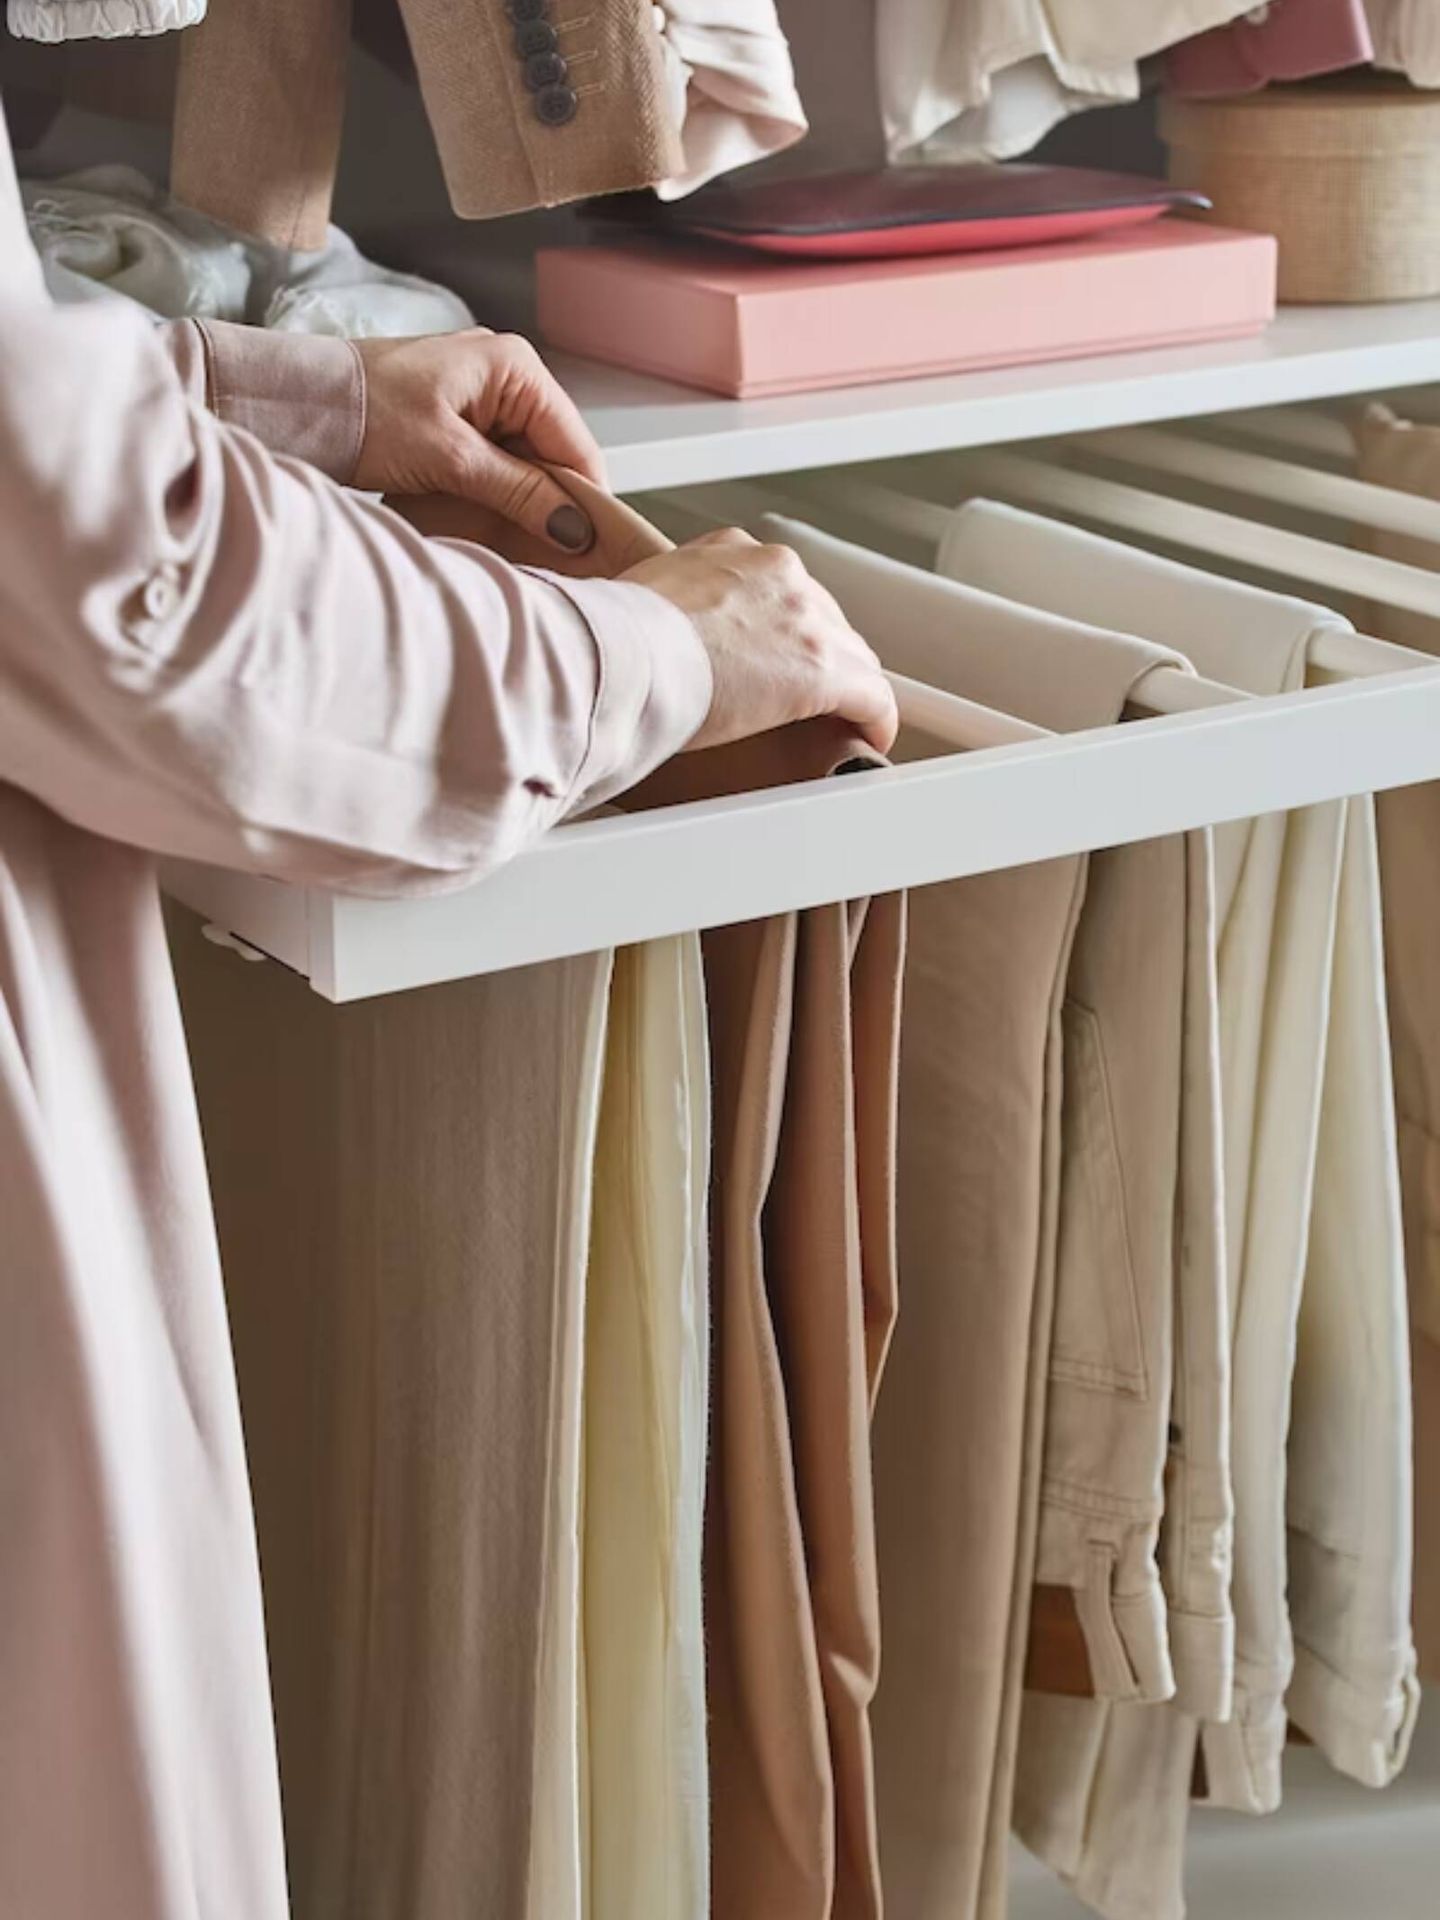 Soluciones de Ikea para un cambio de armario de ropa, fácil y efectivo. (Cortesía)